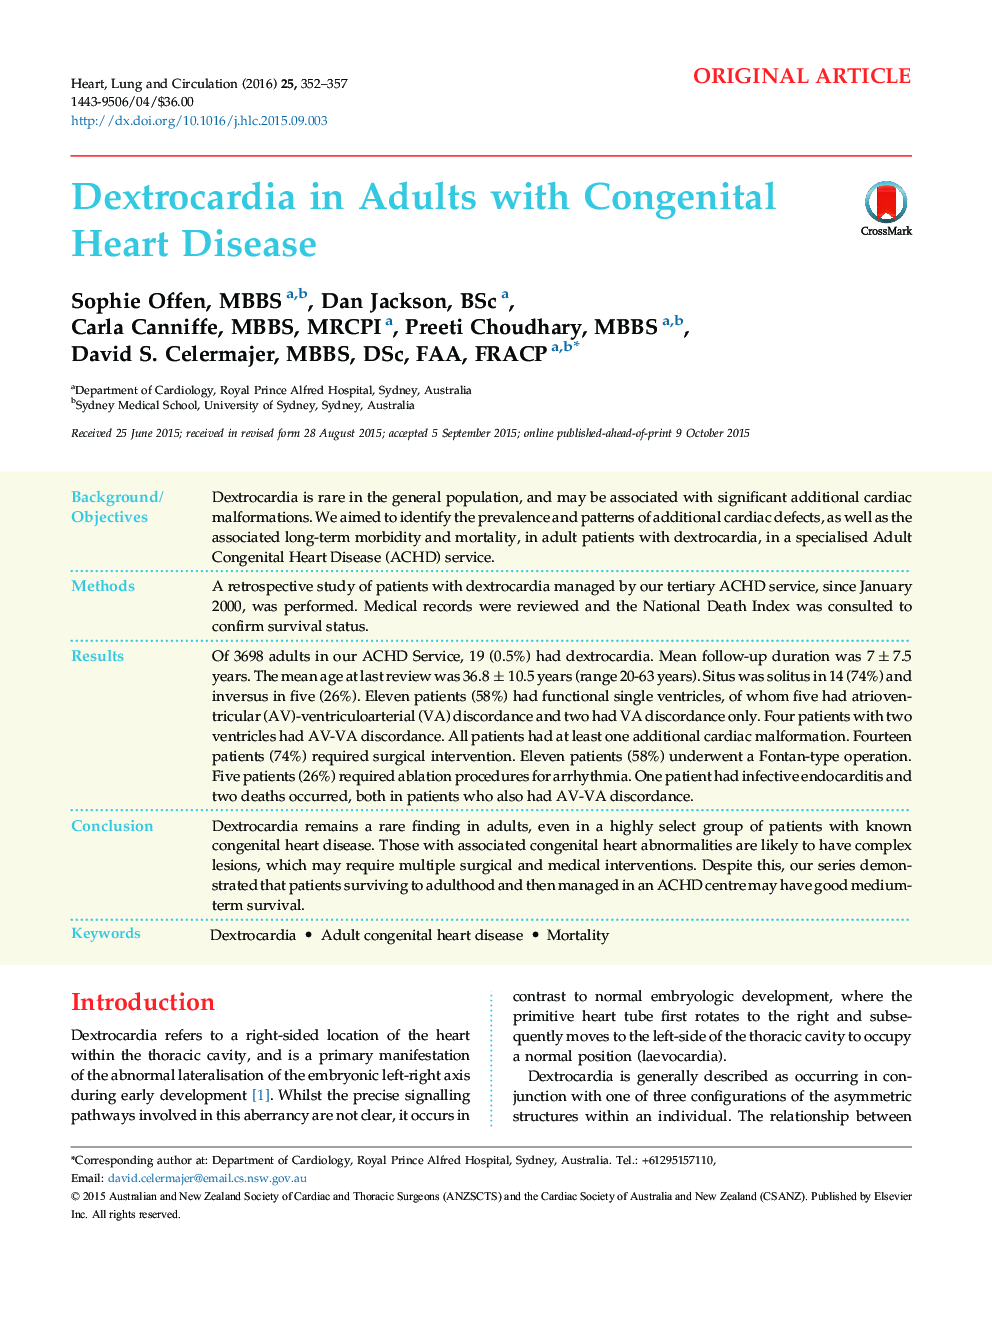 Dextrocardia in Adults with Congenital Heart Disease